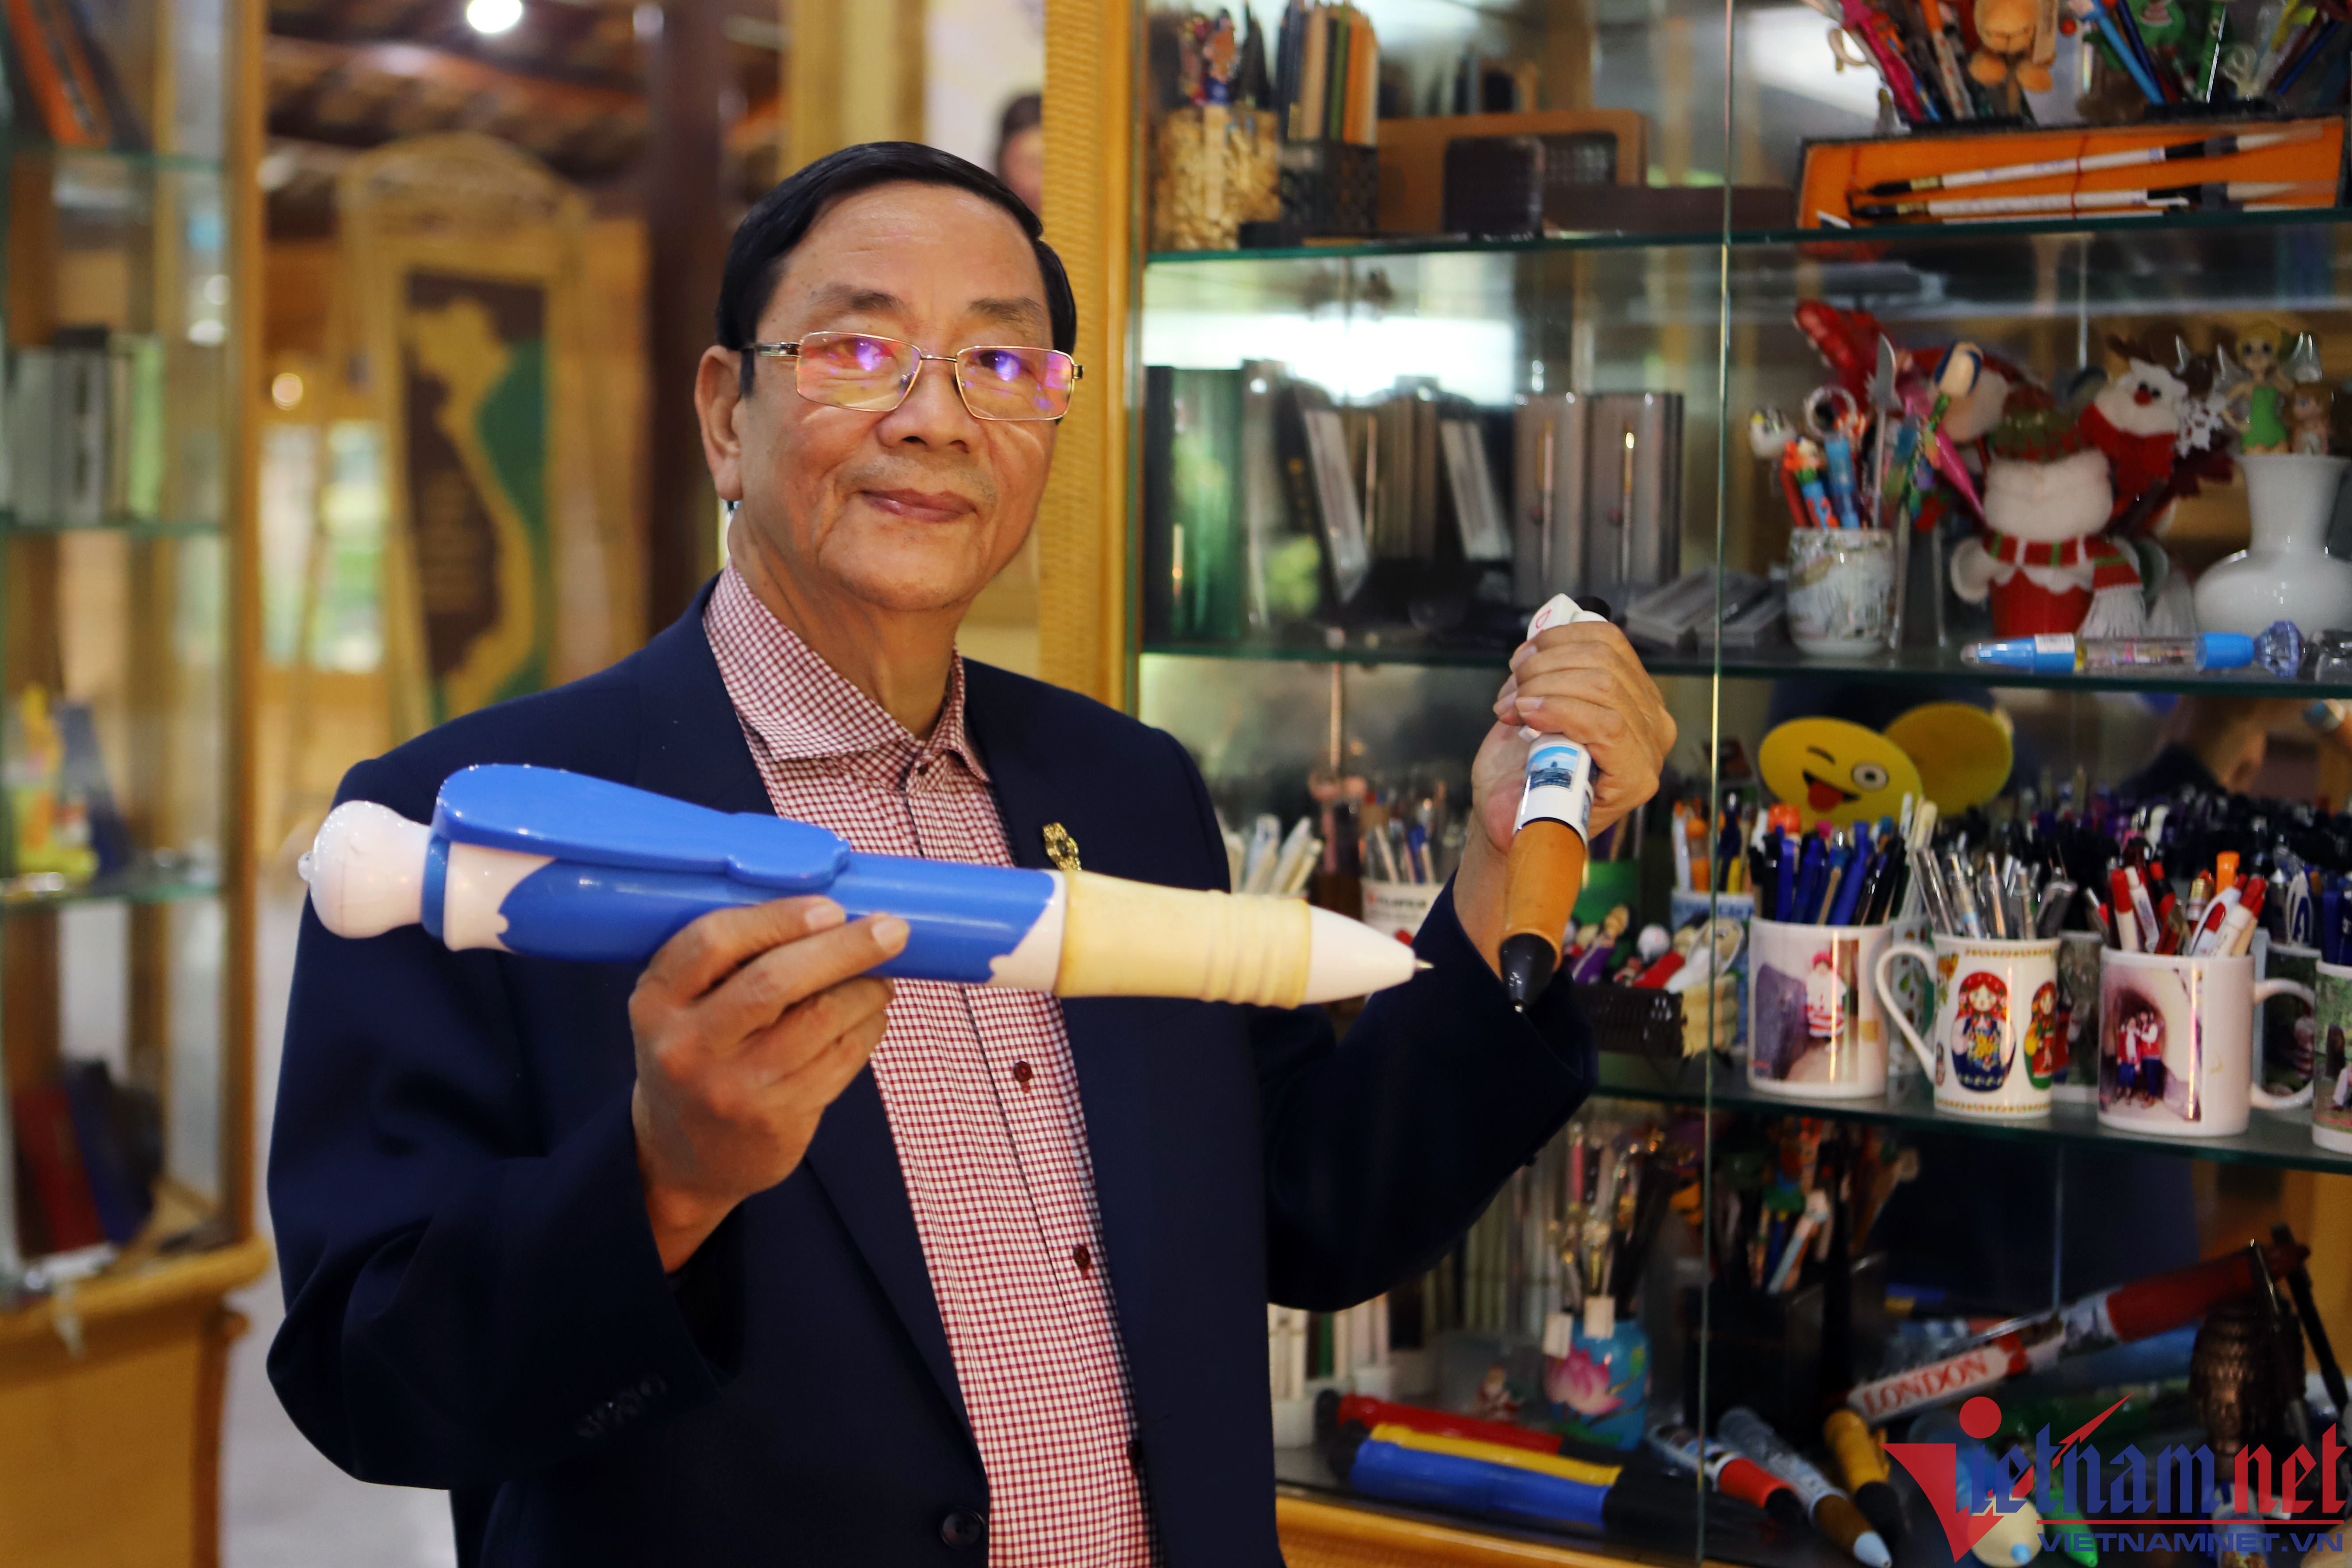 Bộ sưu tập 4.000 cây bút độc đáo của bác sĩ ở Nha Trang